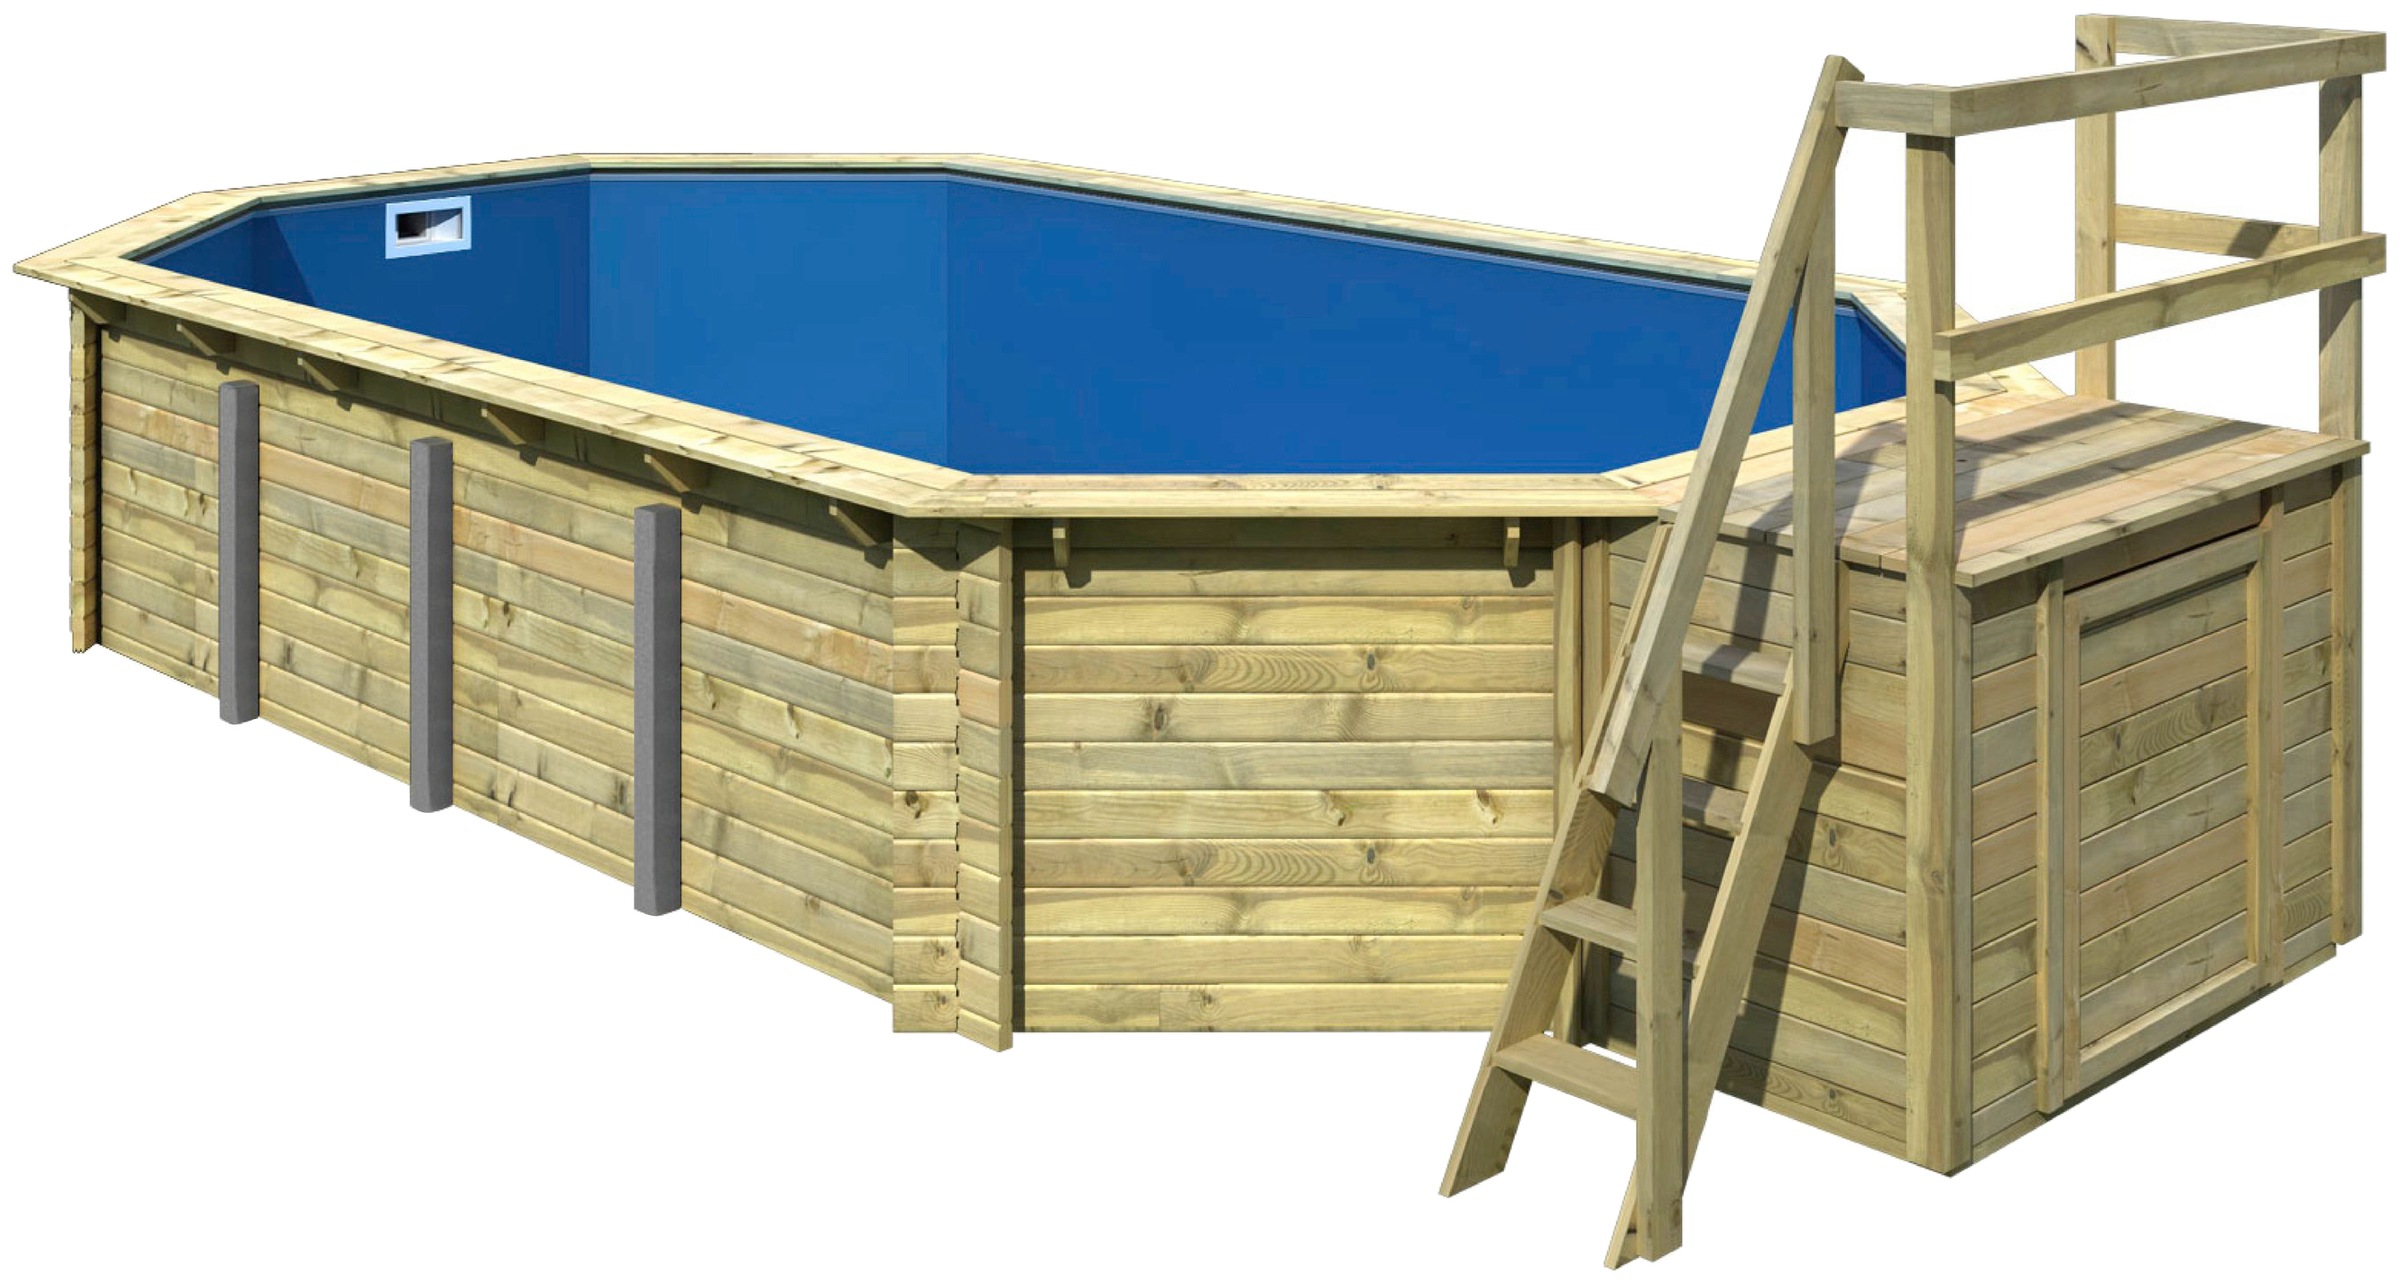 Karibu Achteckpool »SEVILLA Set B«, BxLxH: 780x400x124 cm, mit Terrasse und Geländer